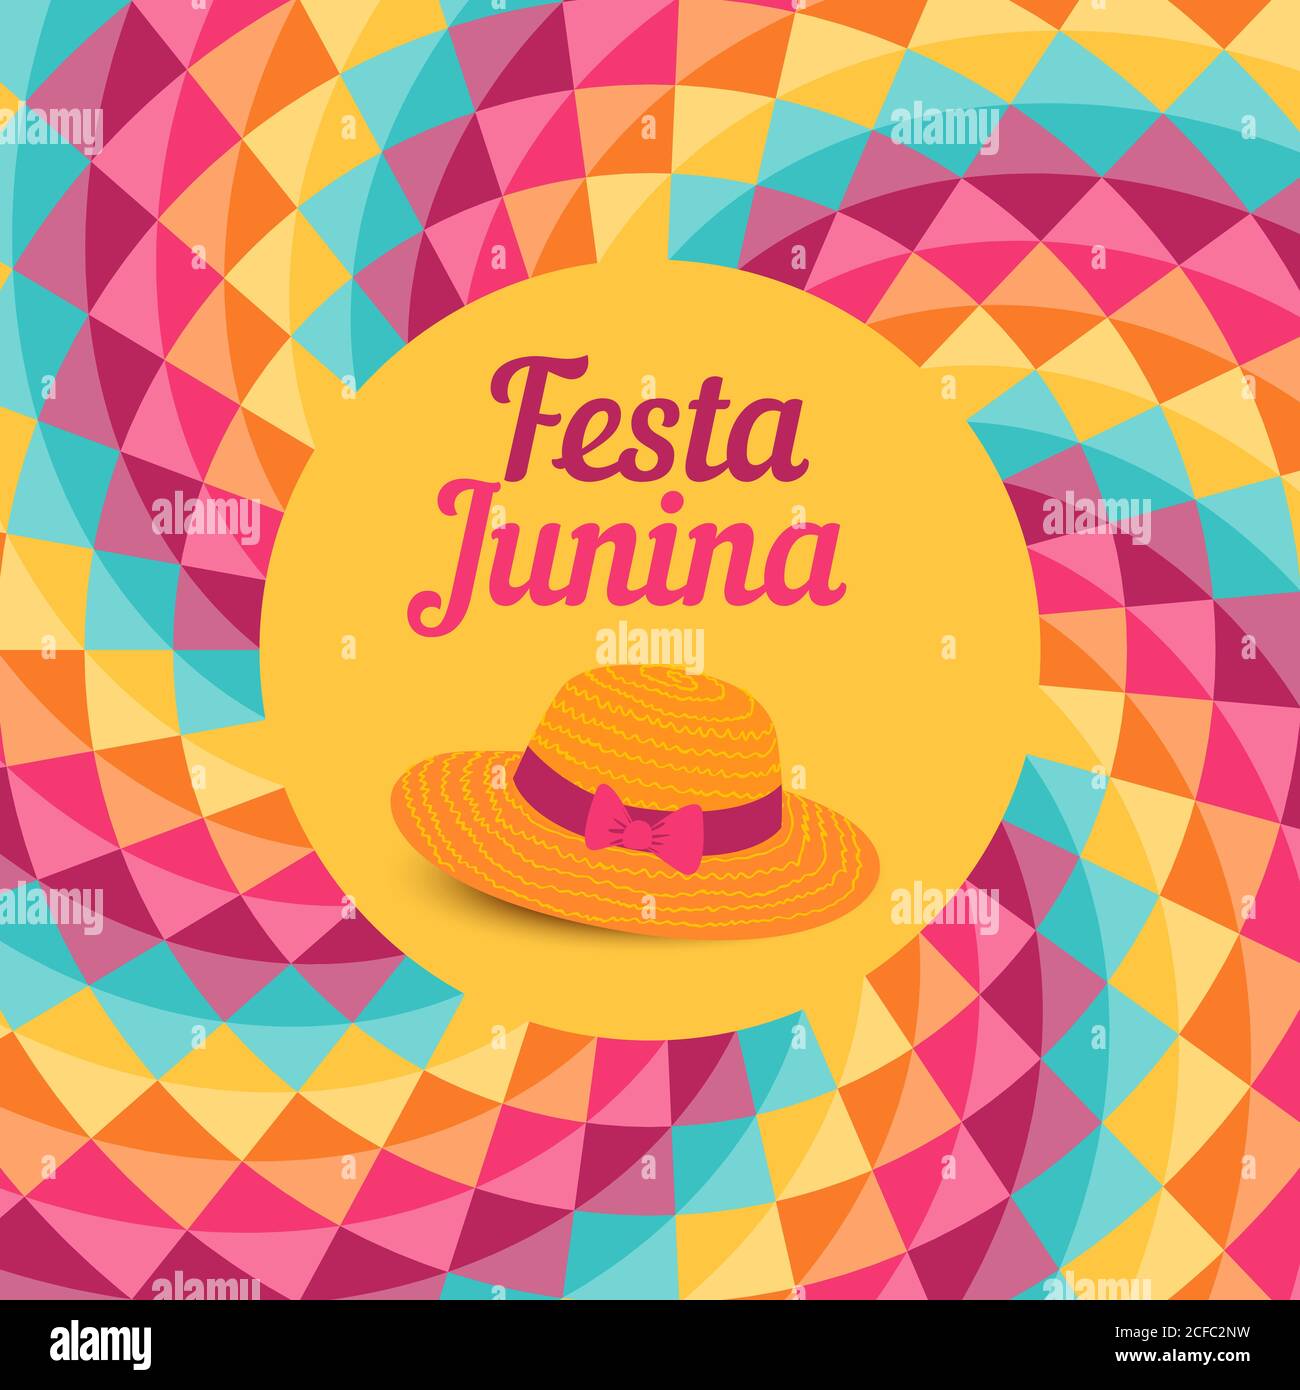 Festa Junina illustration - traditional Brazil june festival party - Midsummer holiday. Vector illustration. Stock Vector